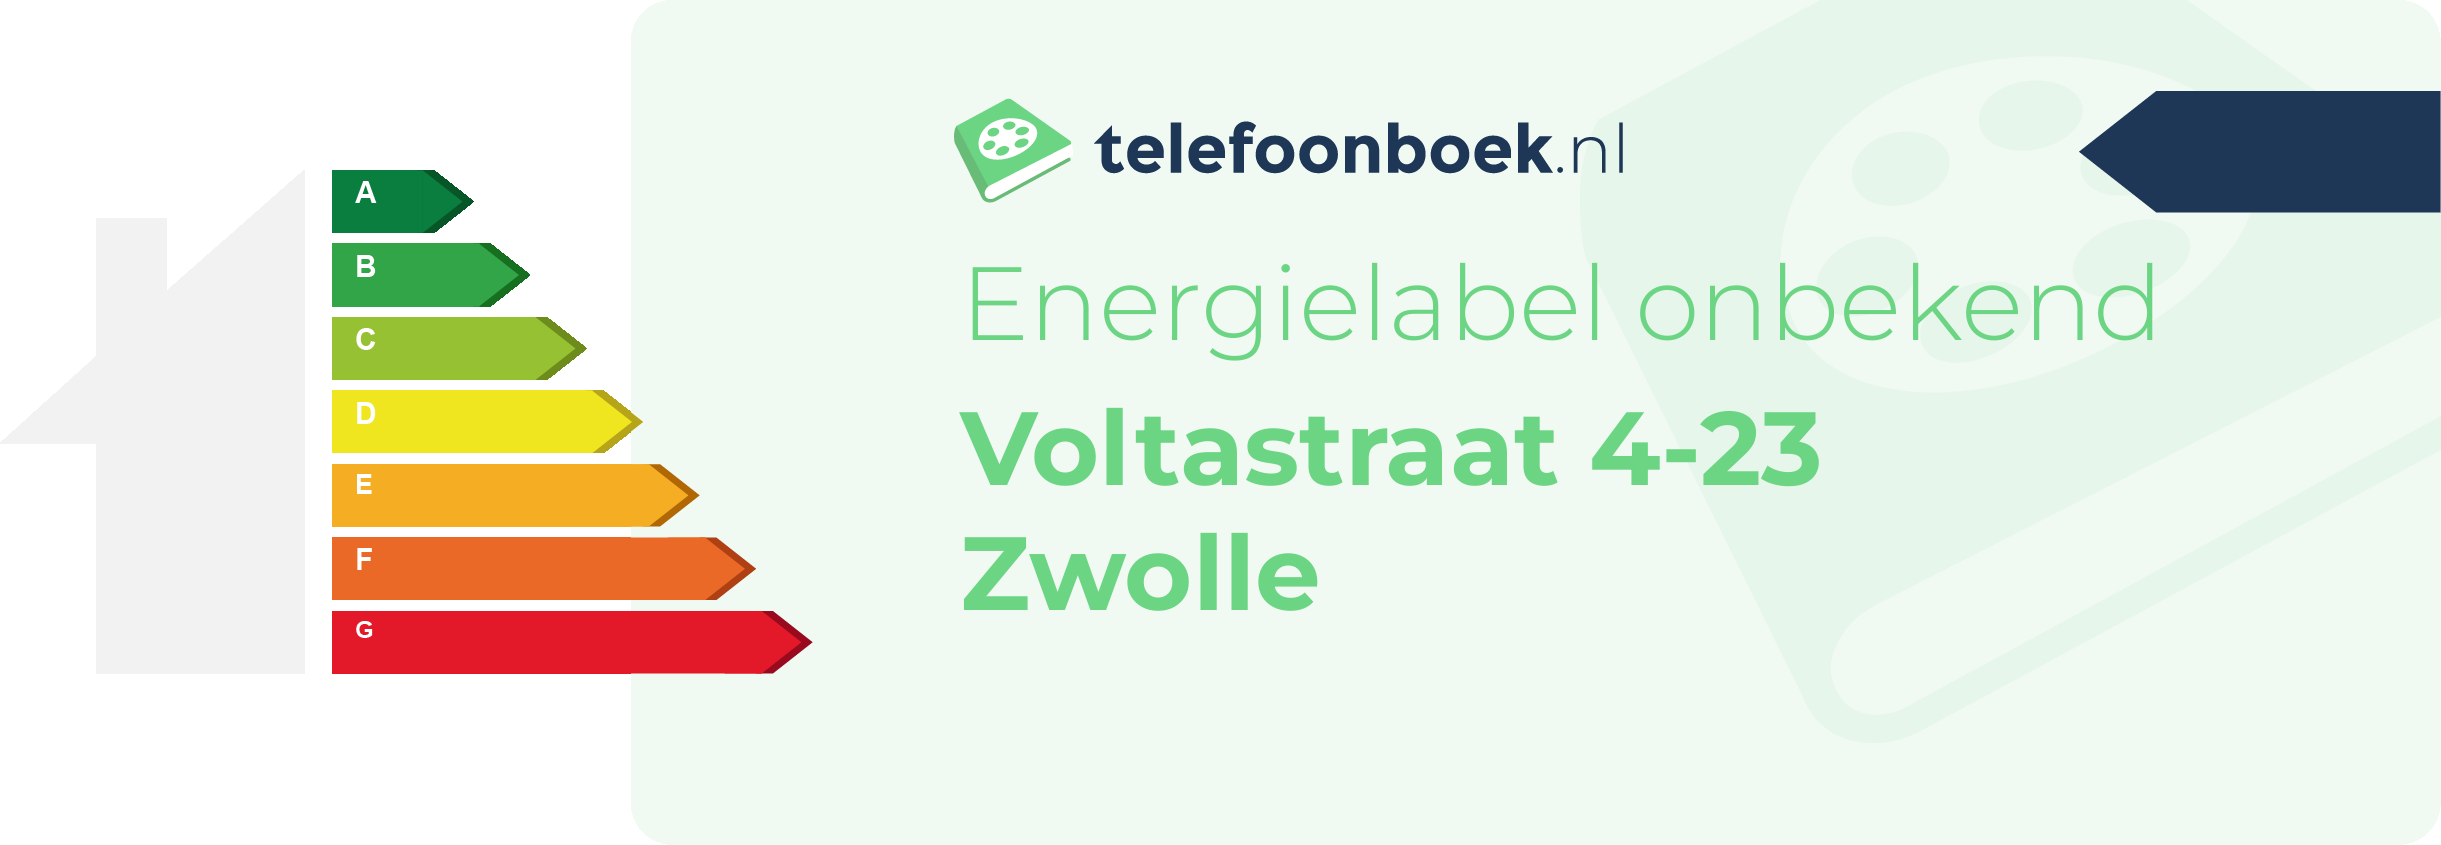 Energielabel Voltastraat 4-23 Zwolle